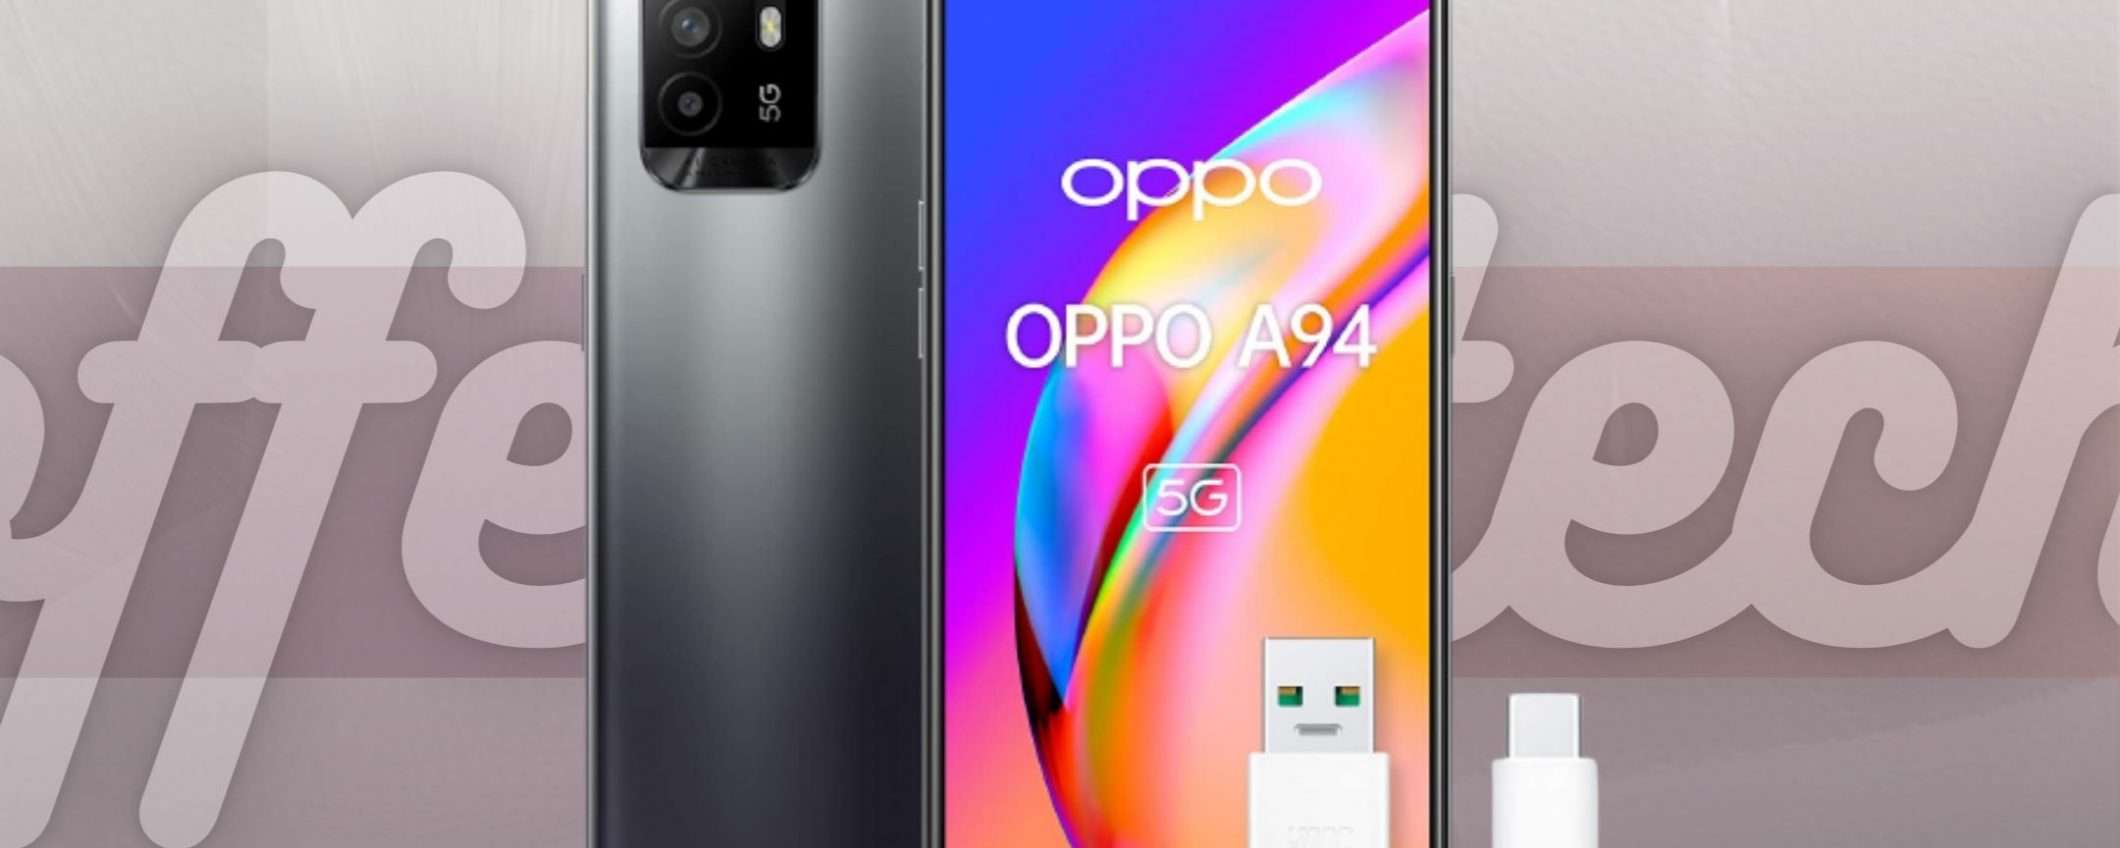 OPPO A94 è lo smartphone DEFINITIVO: prezzo stellare a Tasso Zero